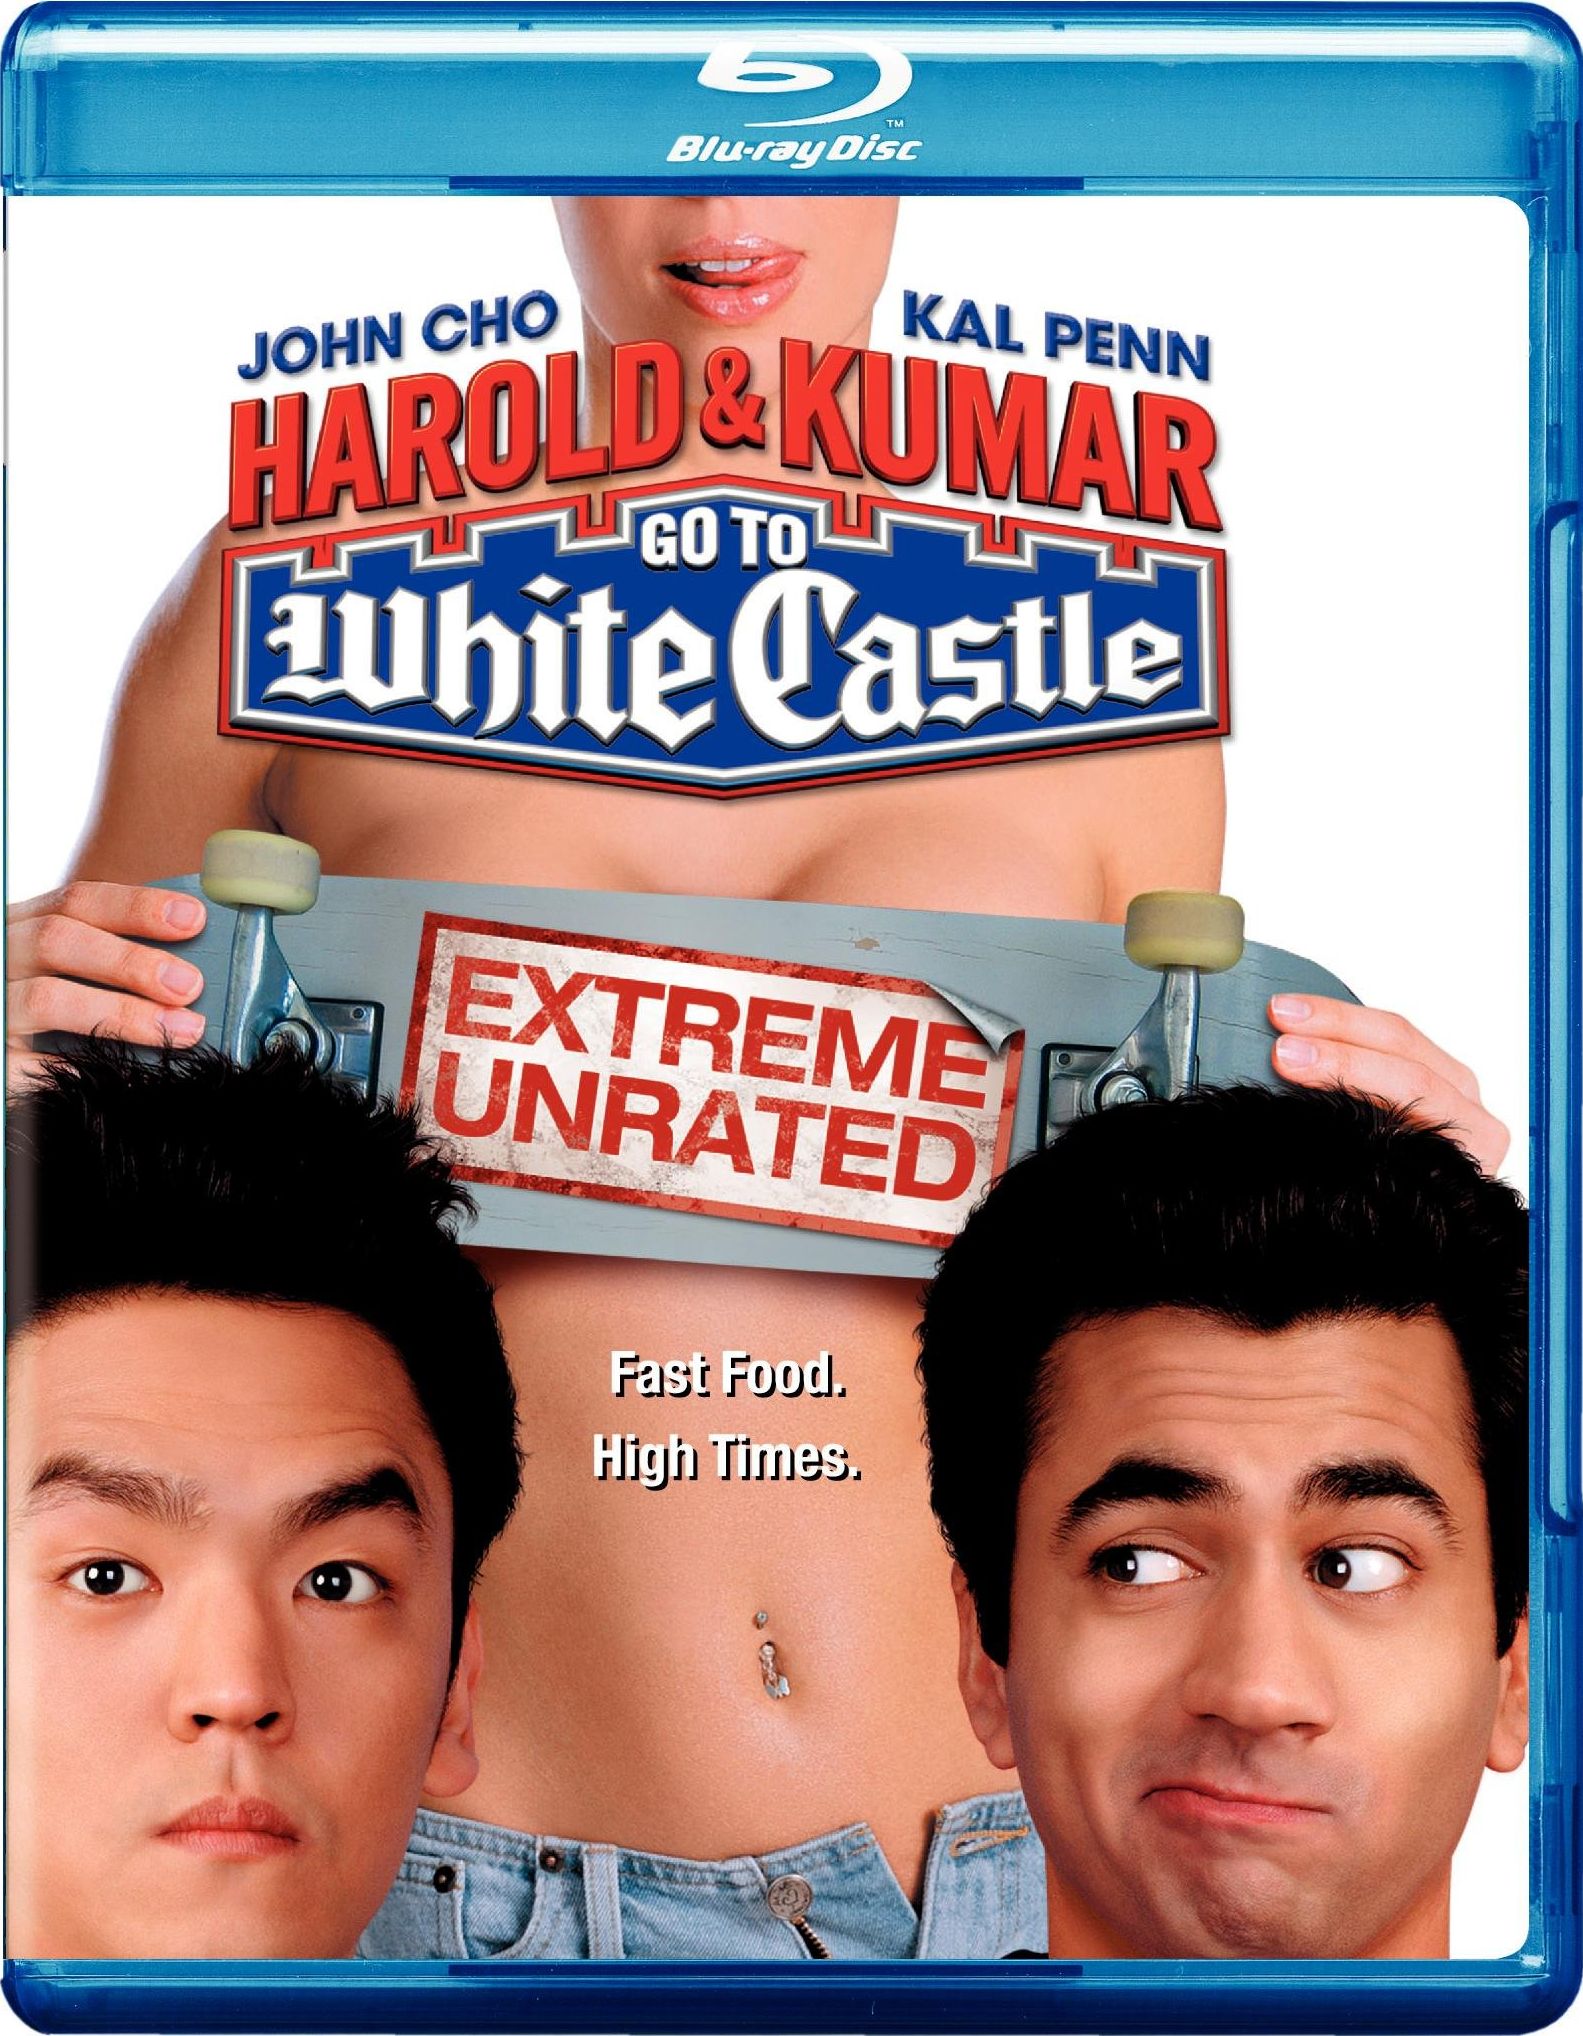 Harold & Kumar Go To White Castle #2